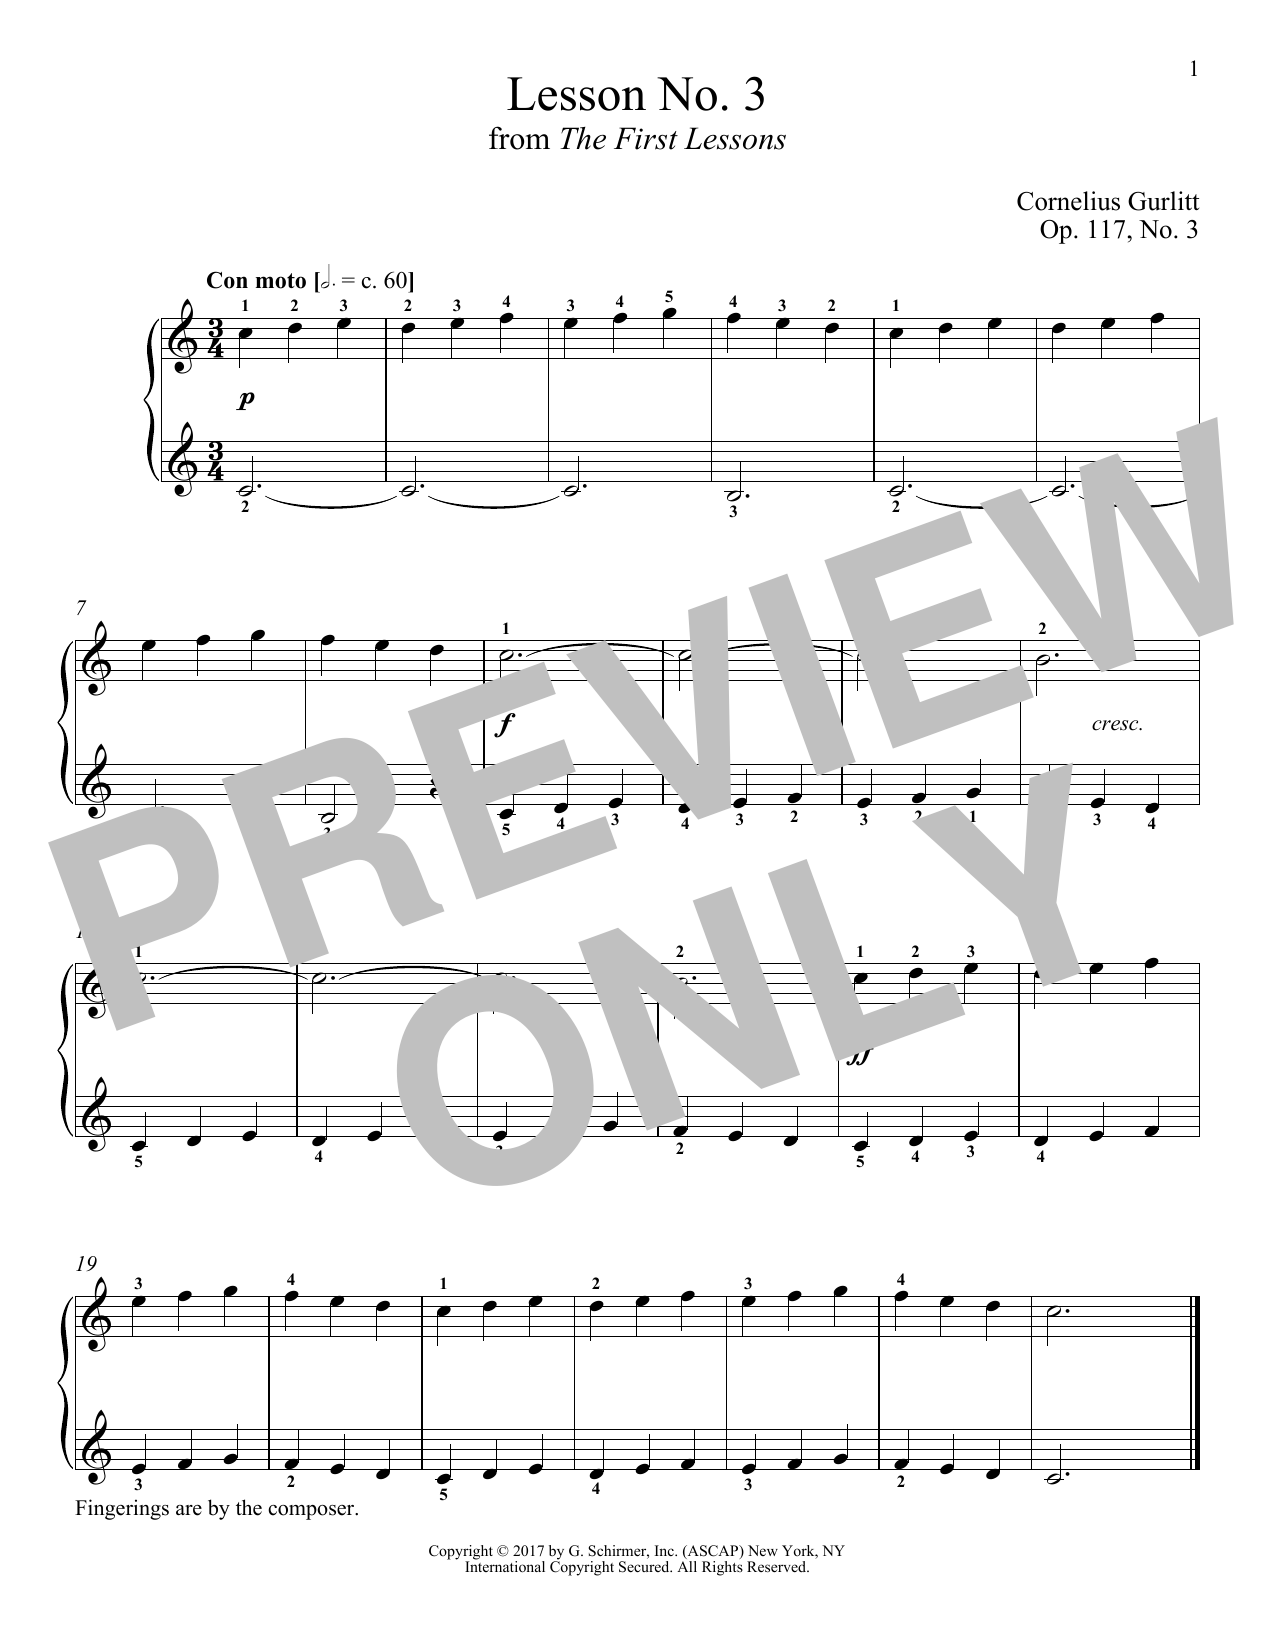 Download Cornelius Gurlitt Con moto, Op. 117, No. 3 Sheet Music